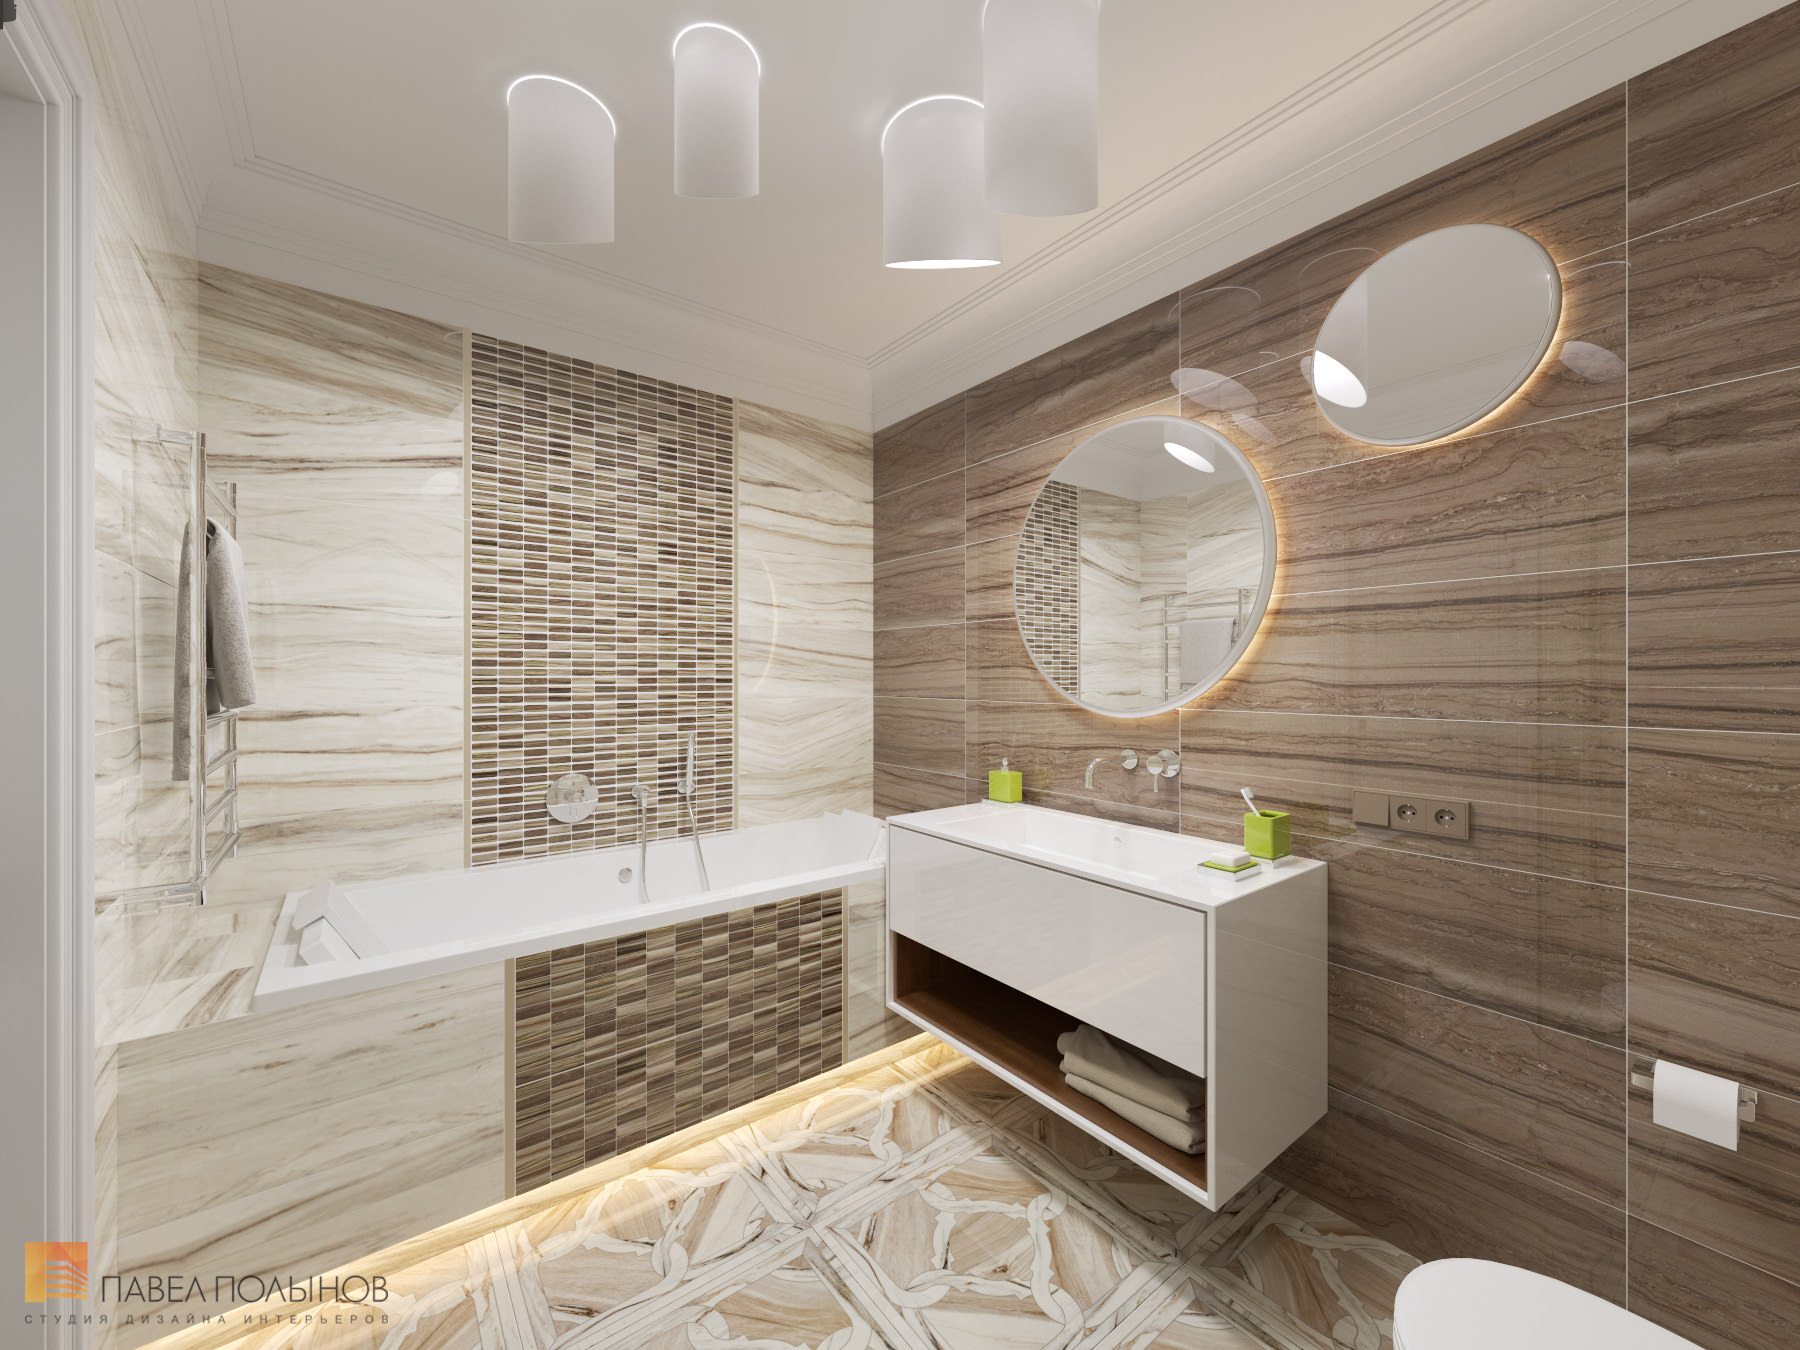 Фото дизайн интерьера ванной из проекта «Интерьер квартиры в стиле неоклассики, ЖК «Парадный квартал», 190 кв.м.»